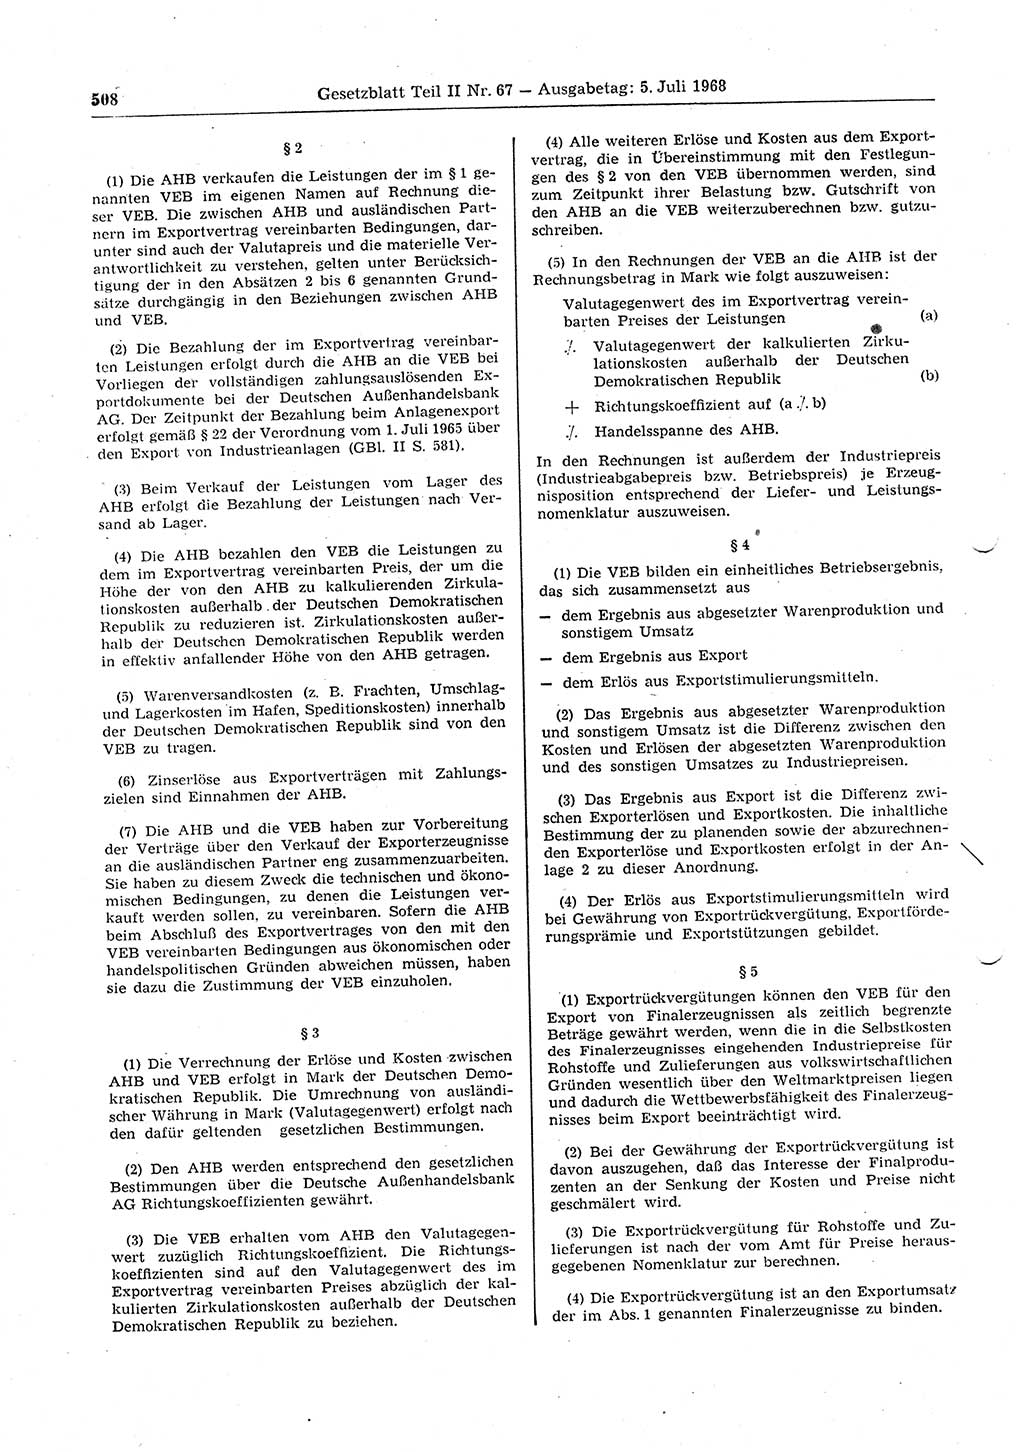 Gesetzblatt (GBl.) der Deutschen Demokratischen Republik (DDR) Teil ⅠⅠ 1968, Seite 508 (GBl. DDR ⅠⅠ 1968, S. 508)